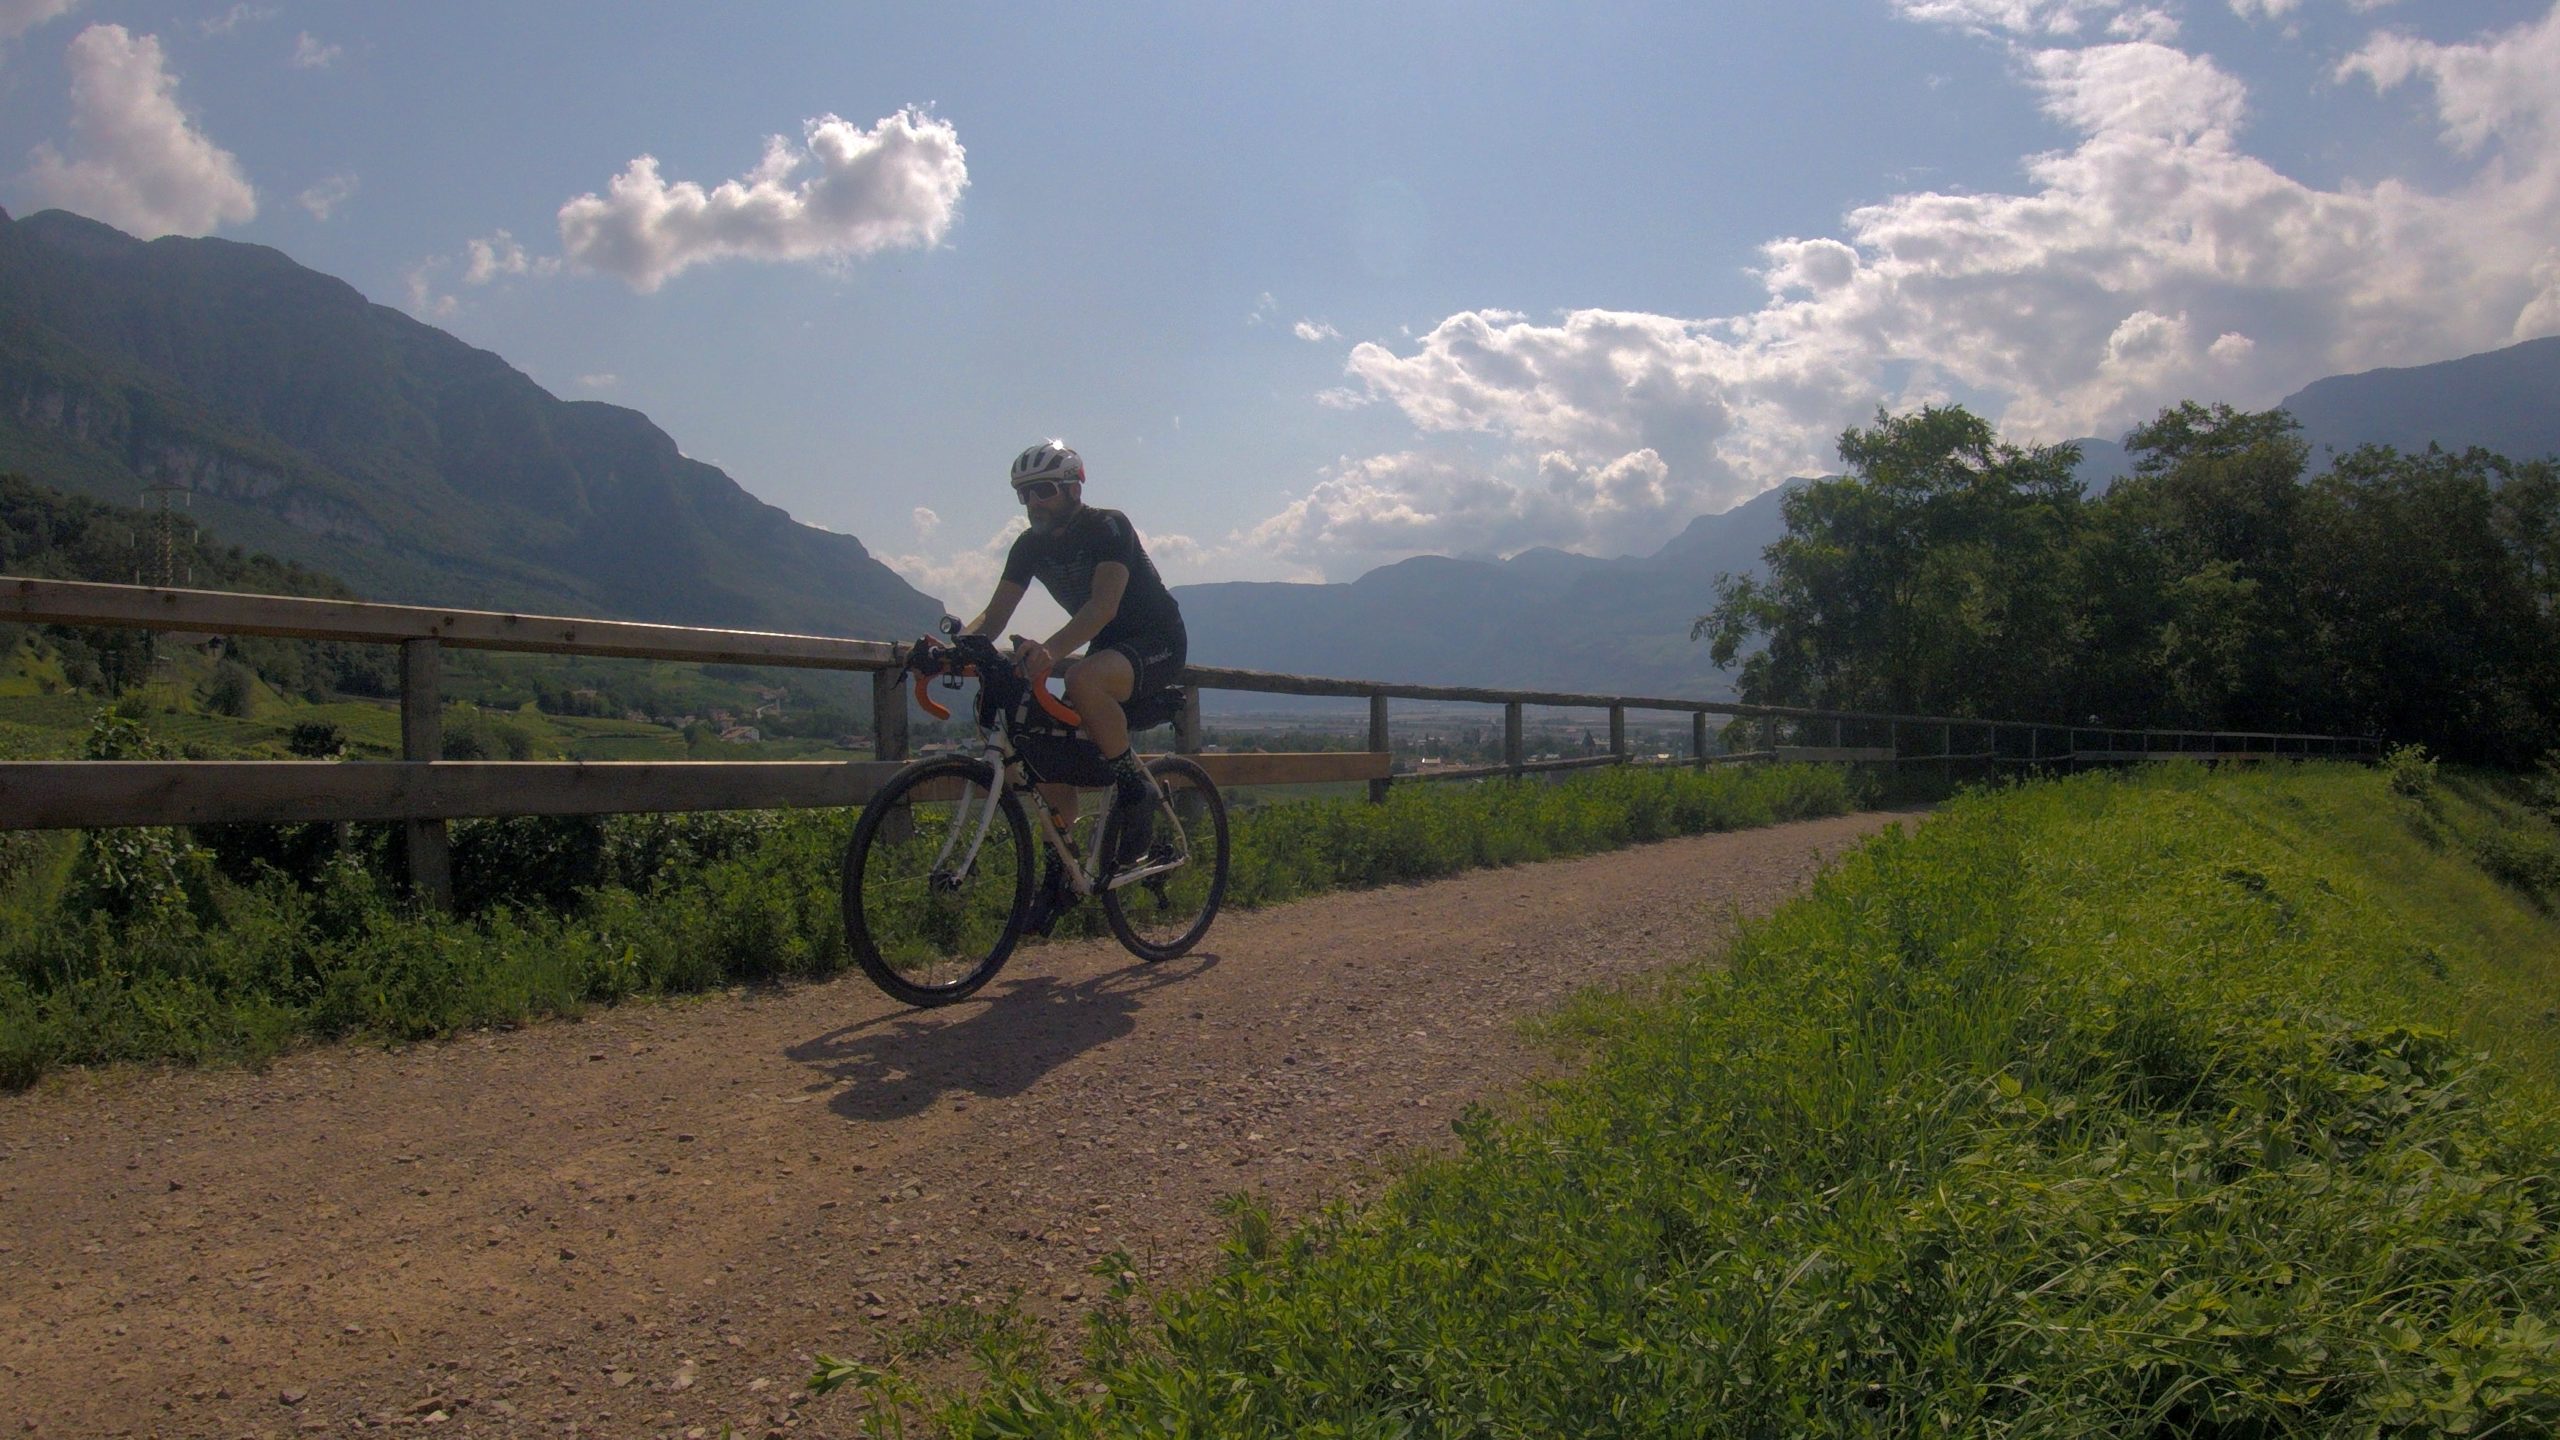 viaggiatore lento, la vecchia ciclabile della Val di Fiemme, cicloturismo in Trentino Alto Adige, itinerari gravel in trentino, piste ciclabili del Trentino Alto Adige, cicloturismo in trentino, itinerari cicloturoistici del Trentino Alto Adige, il trentino in bicicletta, viaggiare in bici in trentino, turismo in trentino, vacanze in bicicletta nella provincia di Trento e Bolzano.